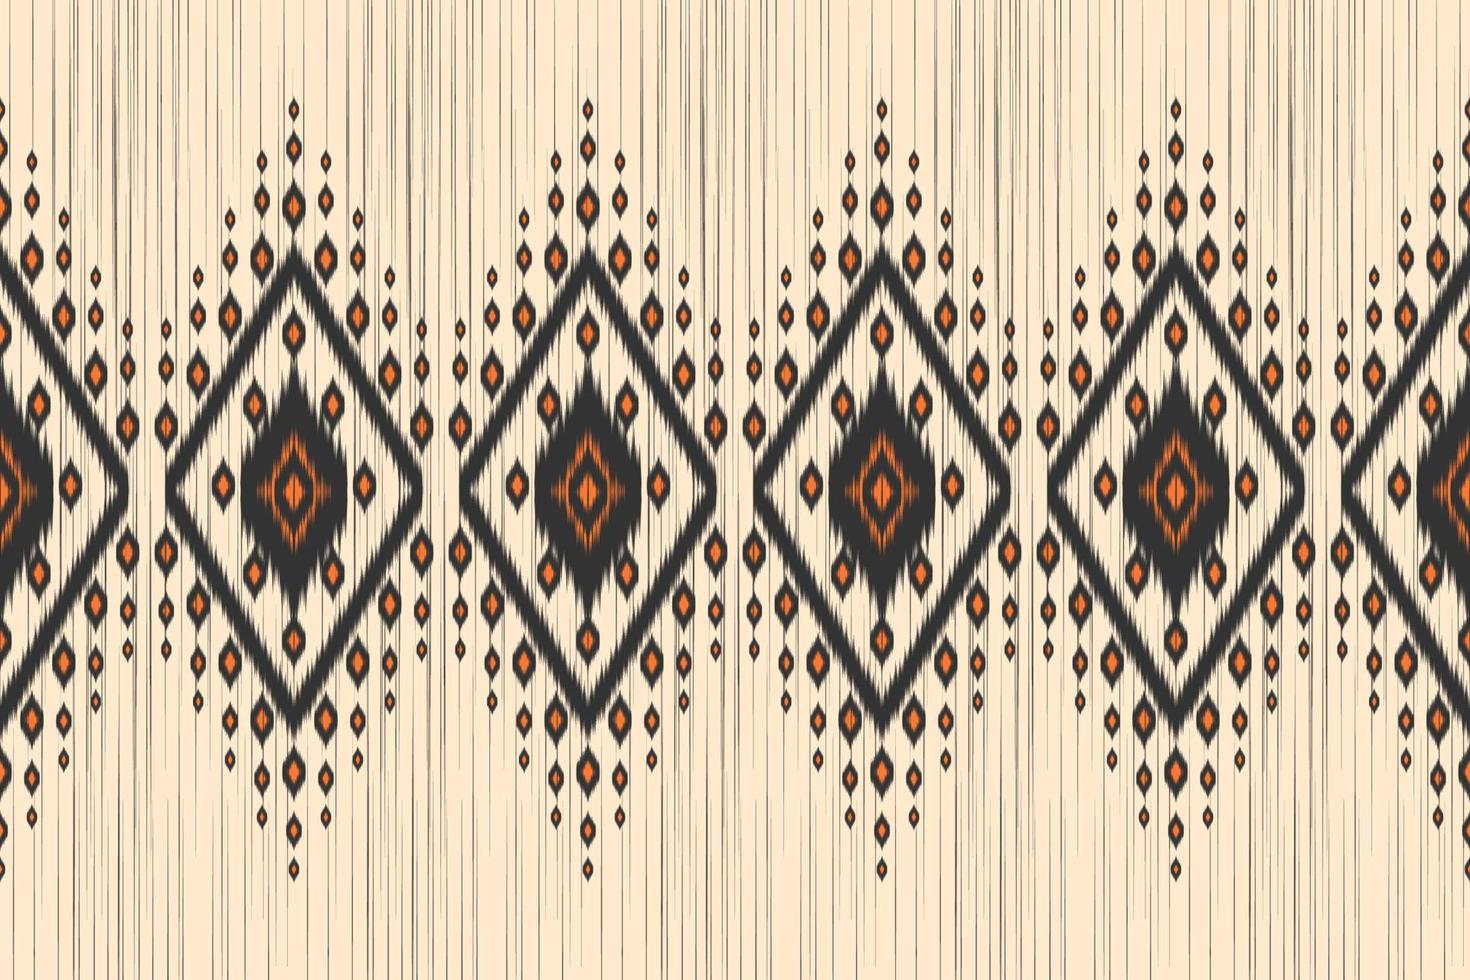 arte abstracto étnico ikat. patrón sin costuras en tribal. estampado de adornos geométricos aztecas. vector